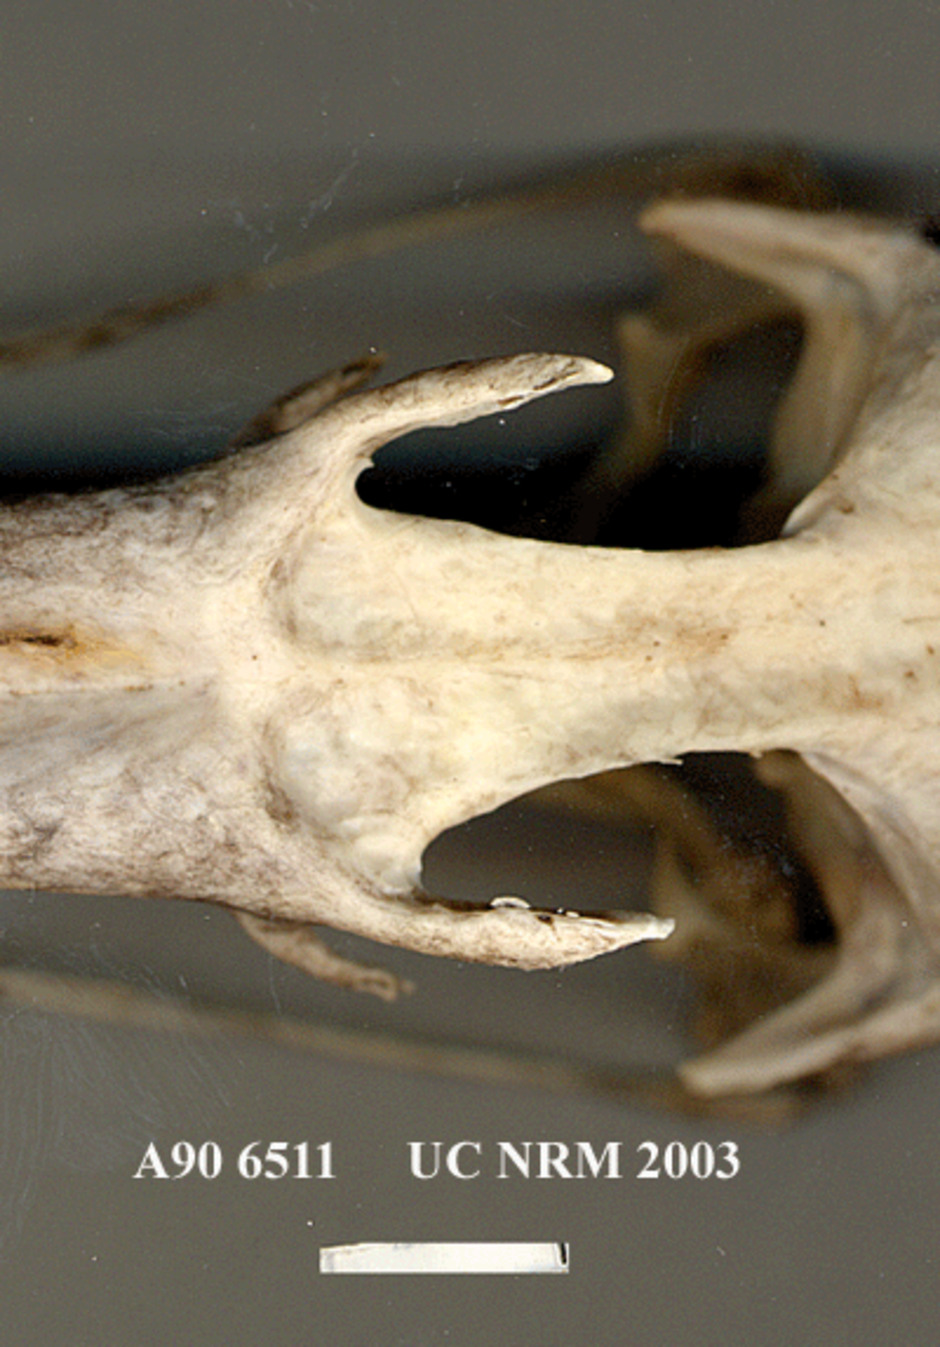 Detalj av kraniet kring ögonregionen, från ovansidan.